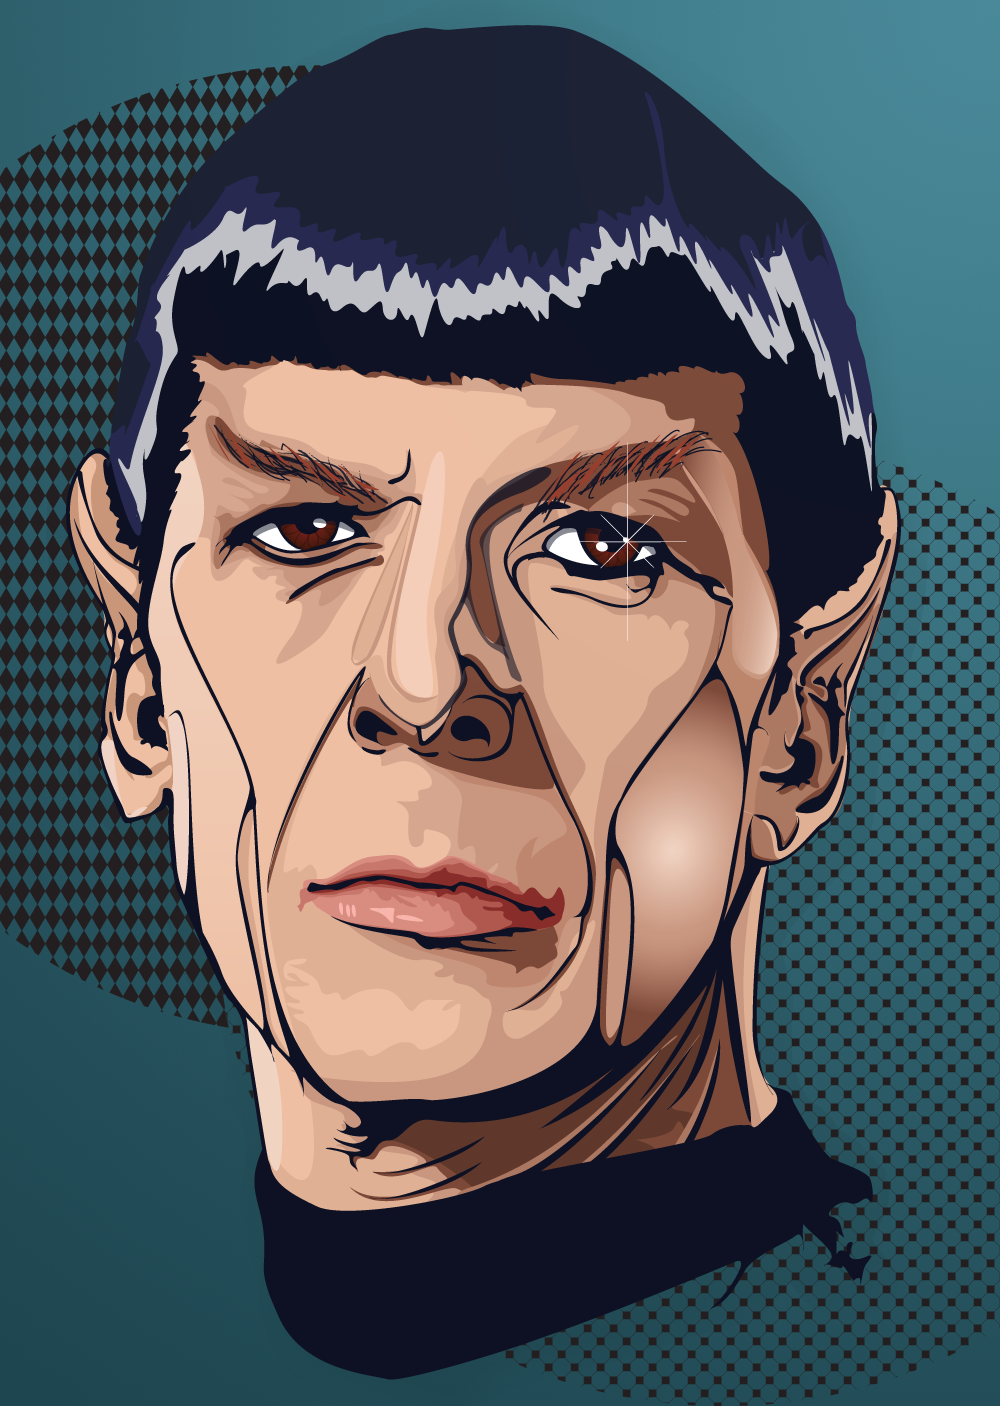 Spock by ThePlumber702 on DeviantArt